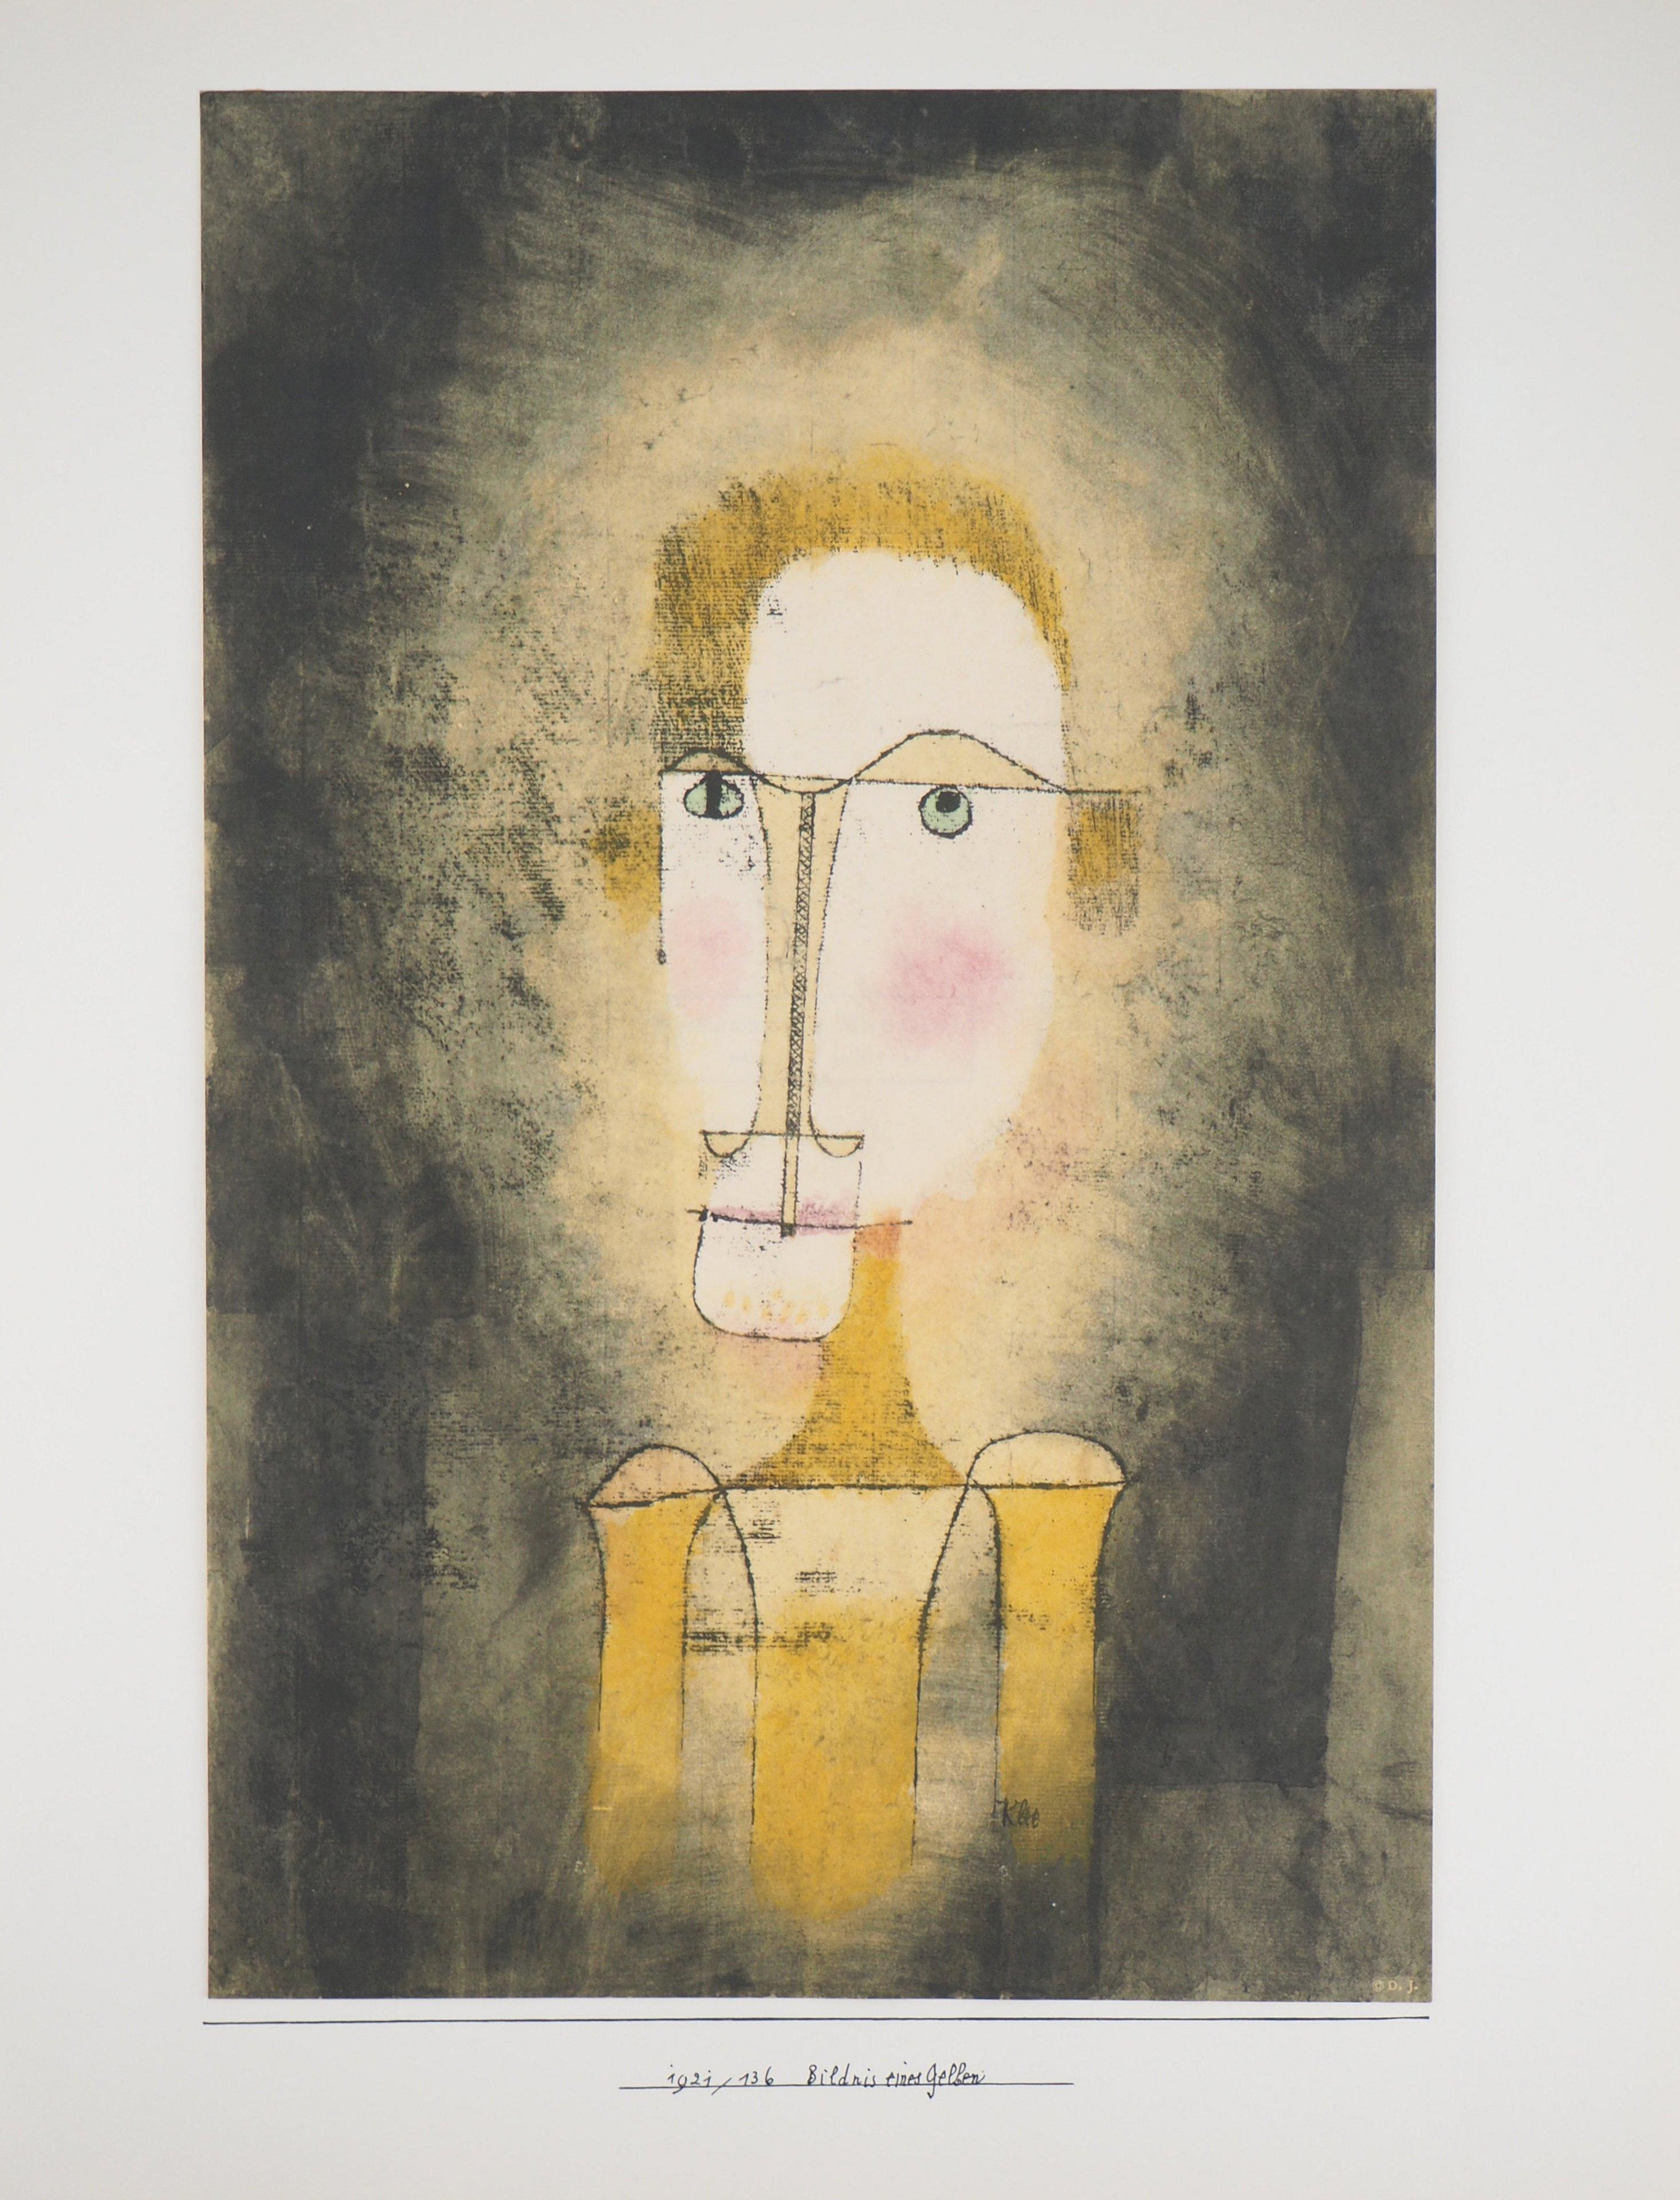 Paul KLEE (après)
Portrait d'un jaune

Lithographie et pochoir (procédé Jacomet), sur papier canson
Signature imprimée dans la plaque
50 x 38,2 cm (19,6 x 14,9 in)

INFORMATION : Cette lithographie a été éditée en 1964 par la Galerie Berggruen en